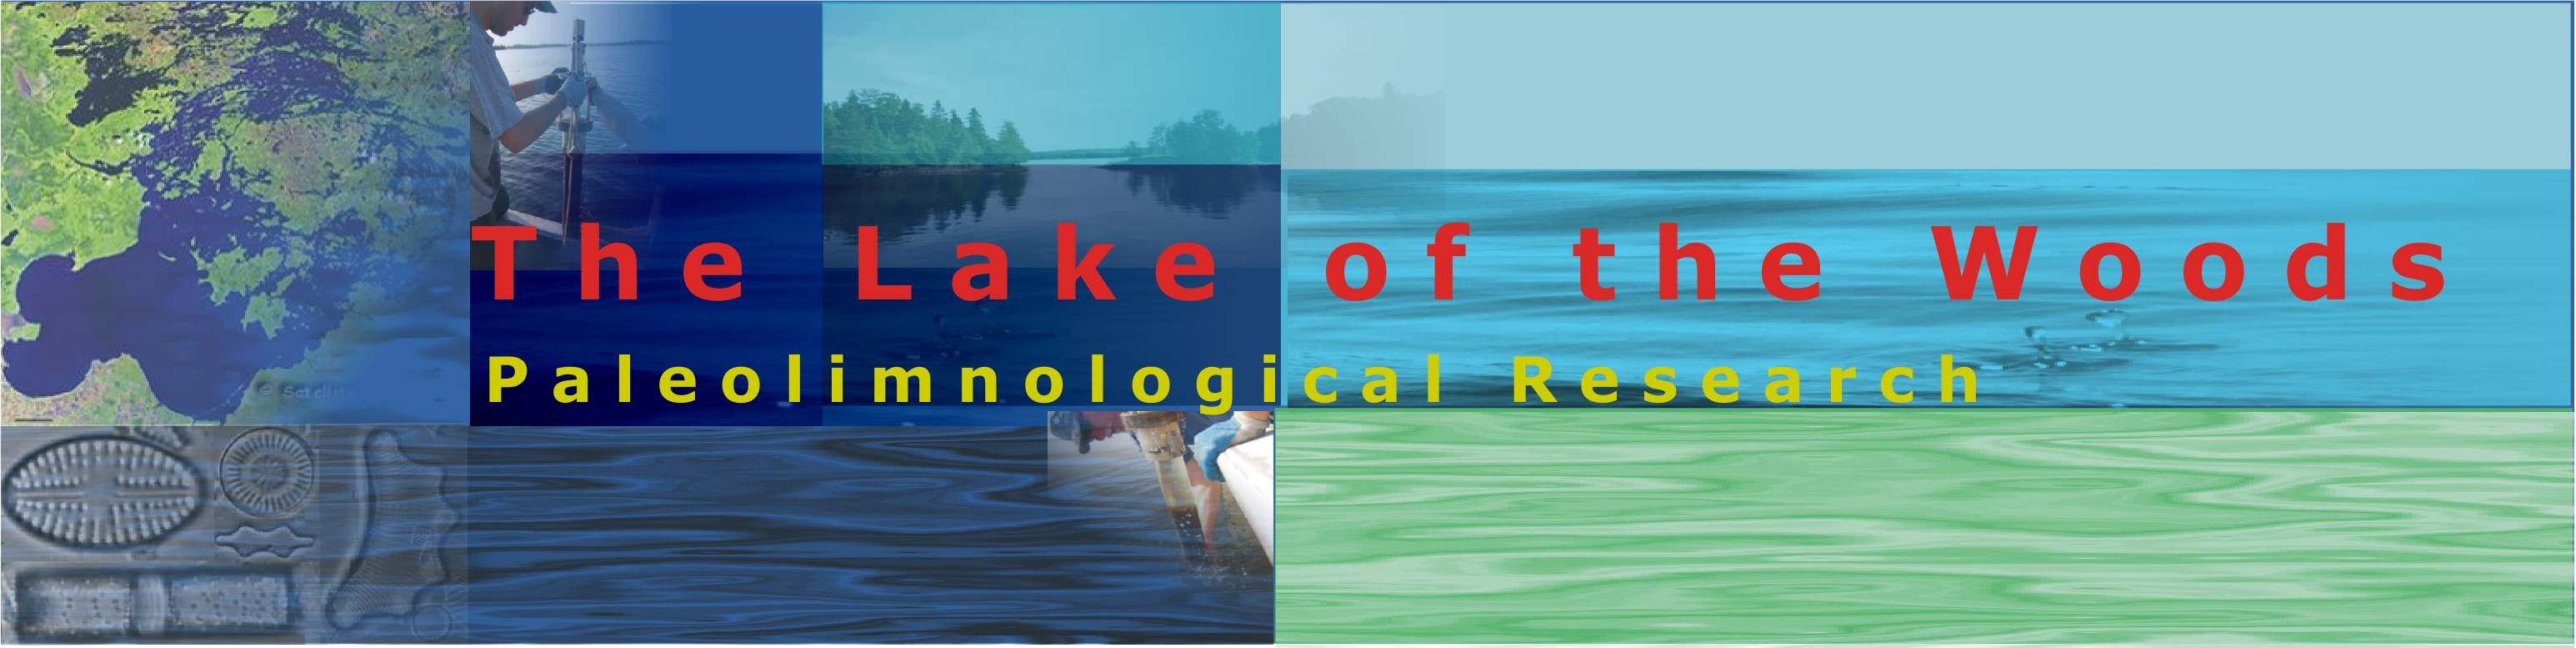 Lake of the Woods Paleolimnology